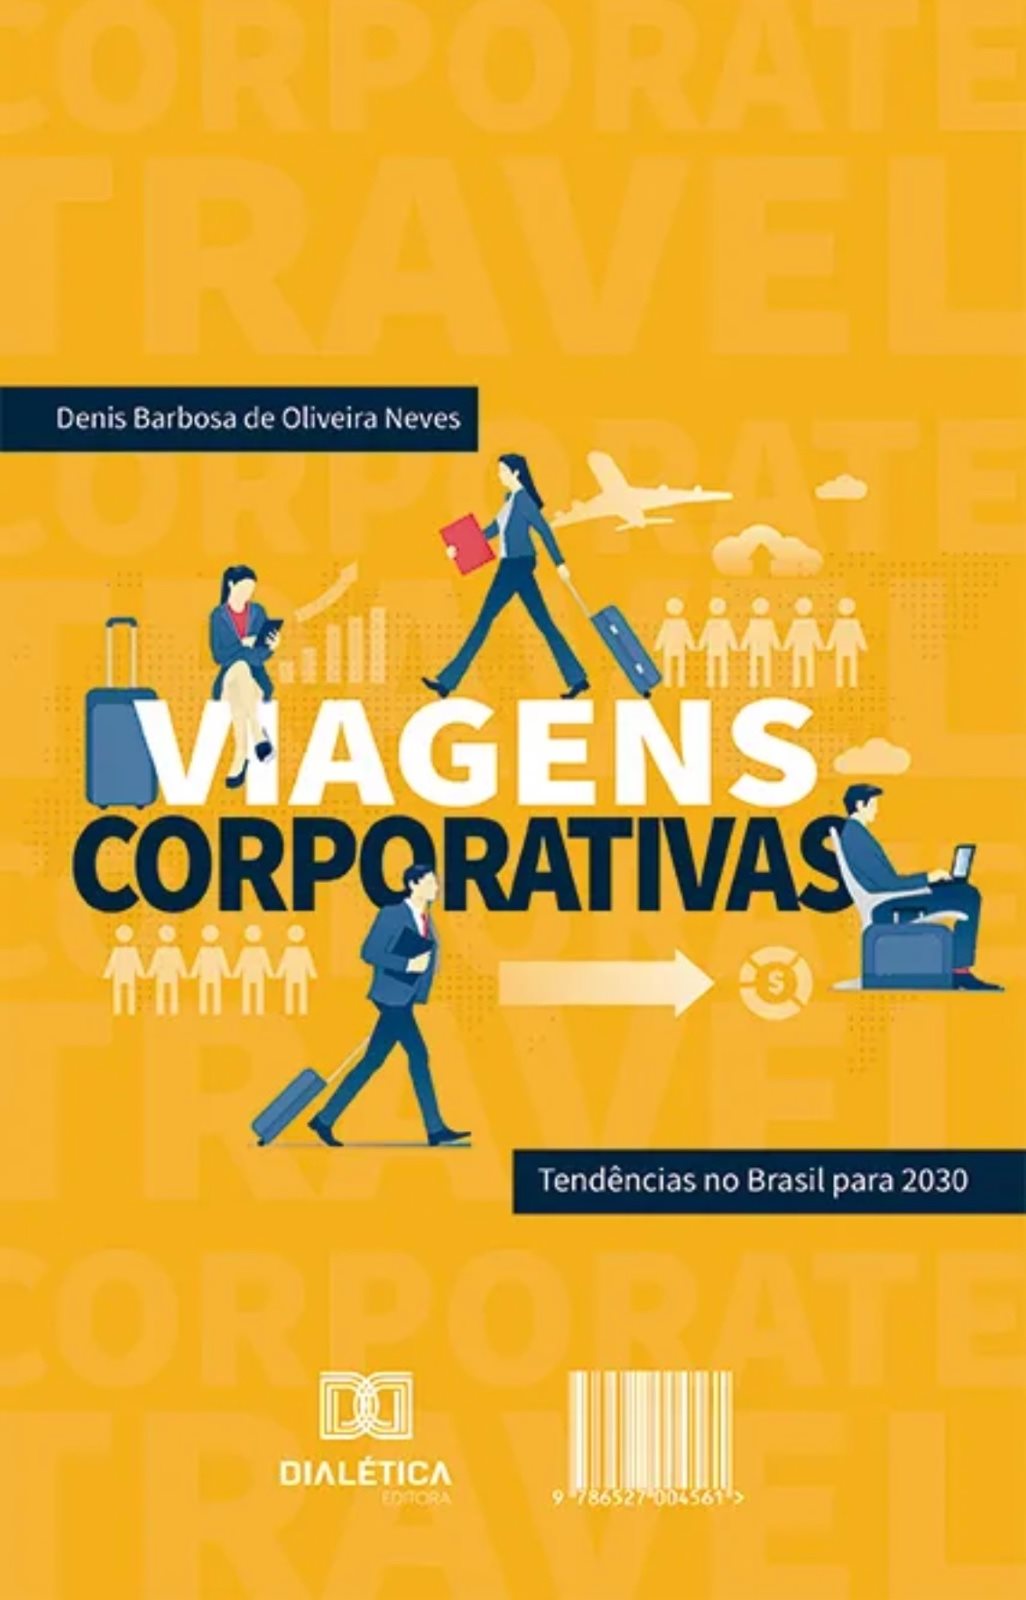 O material é publicado pela Editora Dialética e tem como autor Denis Barbosa de Oliveira Neves, que atua no mercado de Turismo há mais de 20 anos